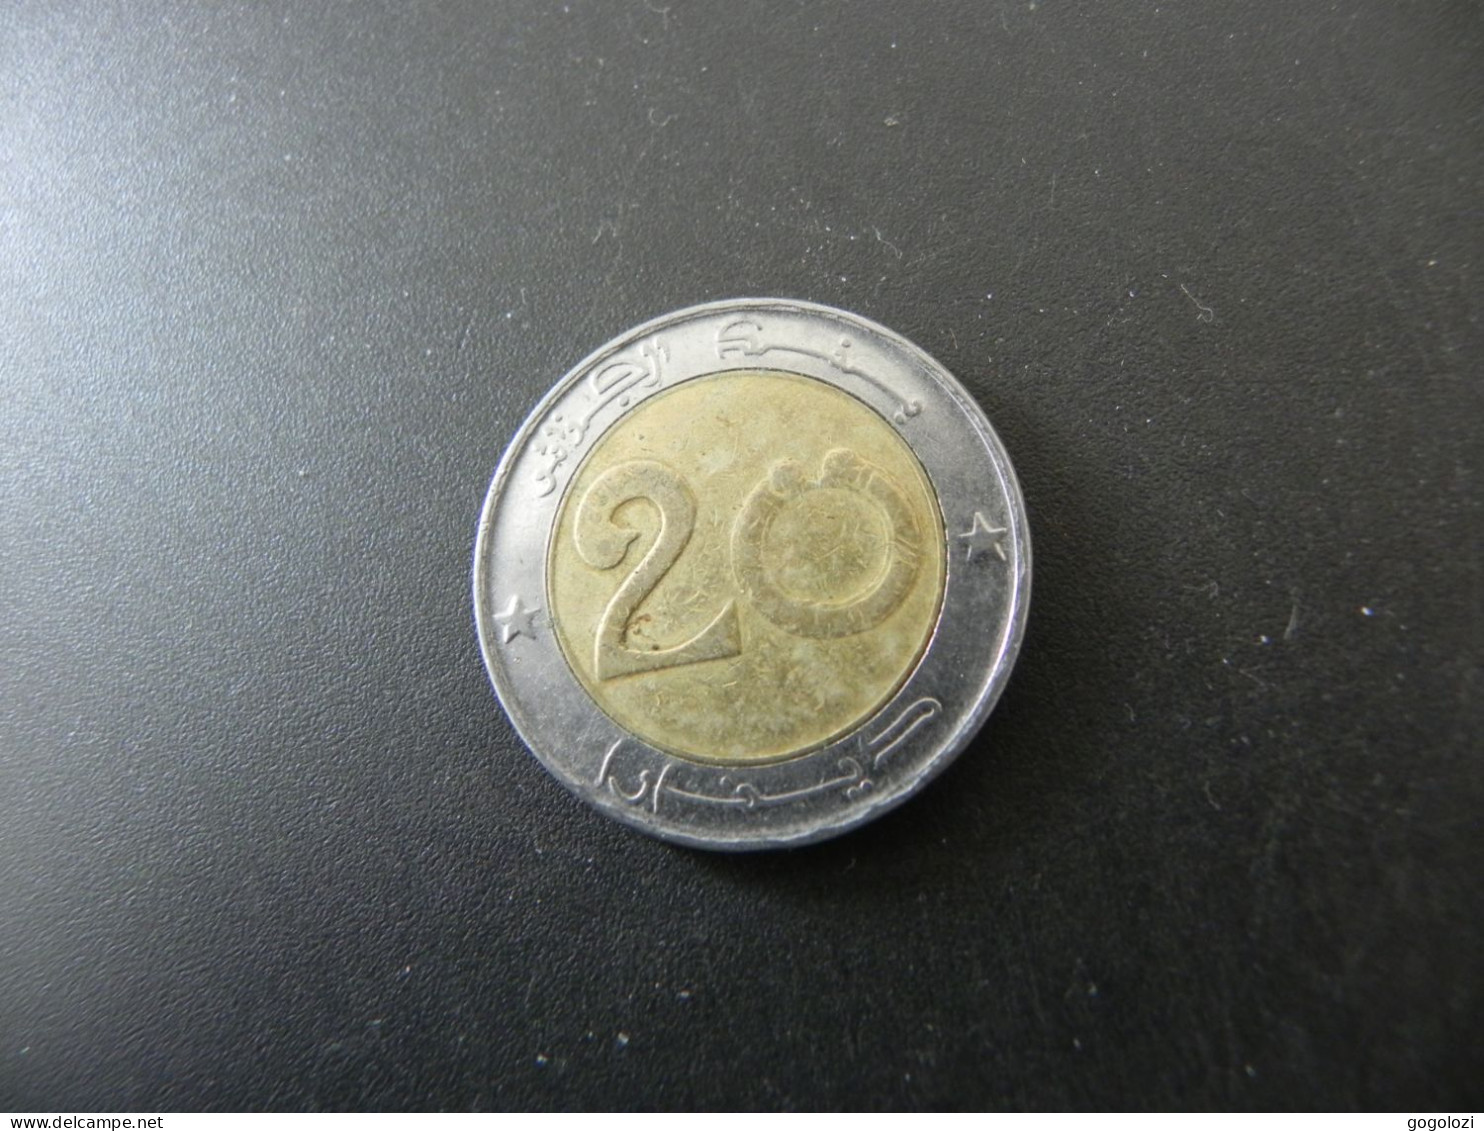 Algeria 20 Dinars 2005 - Algeria